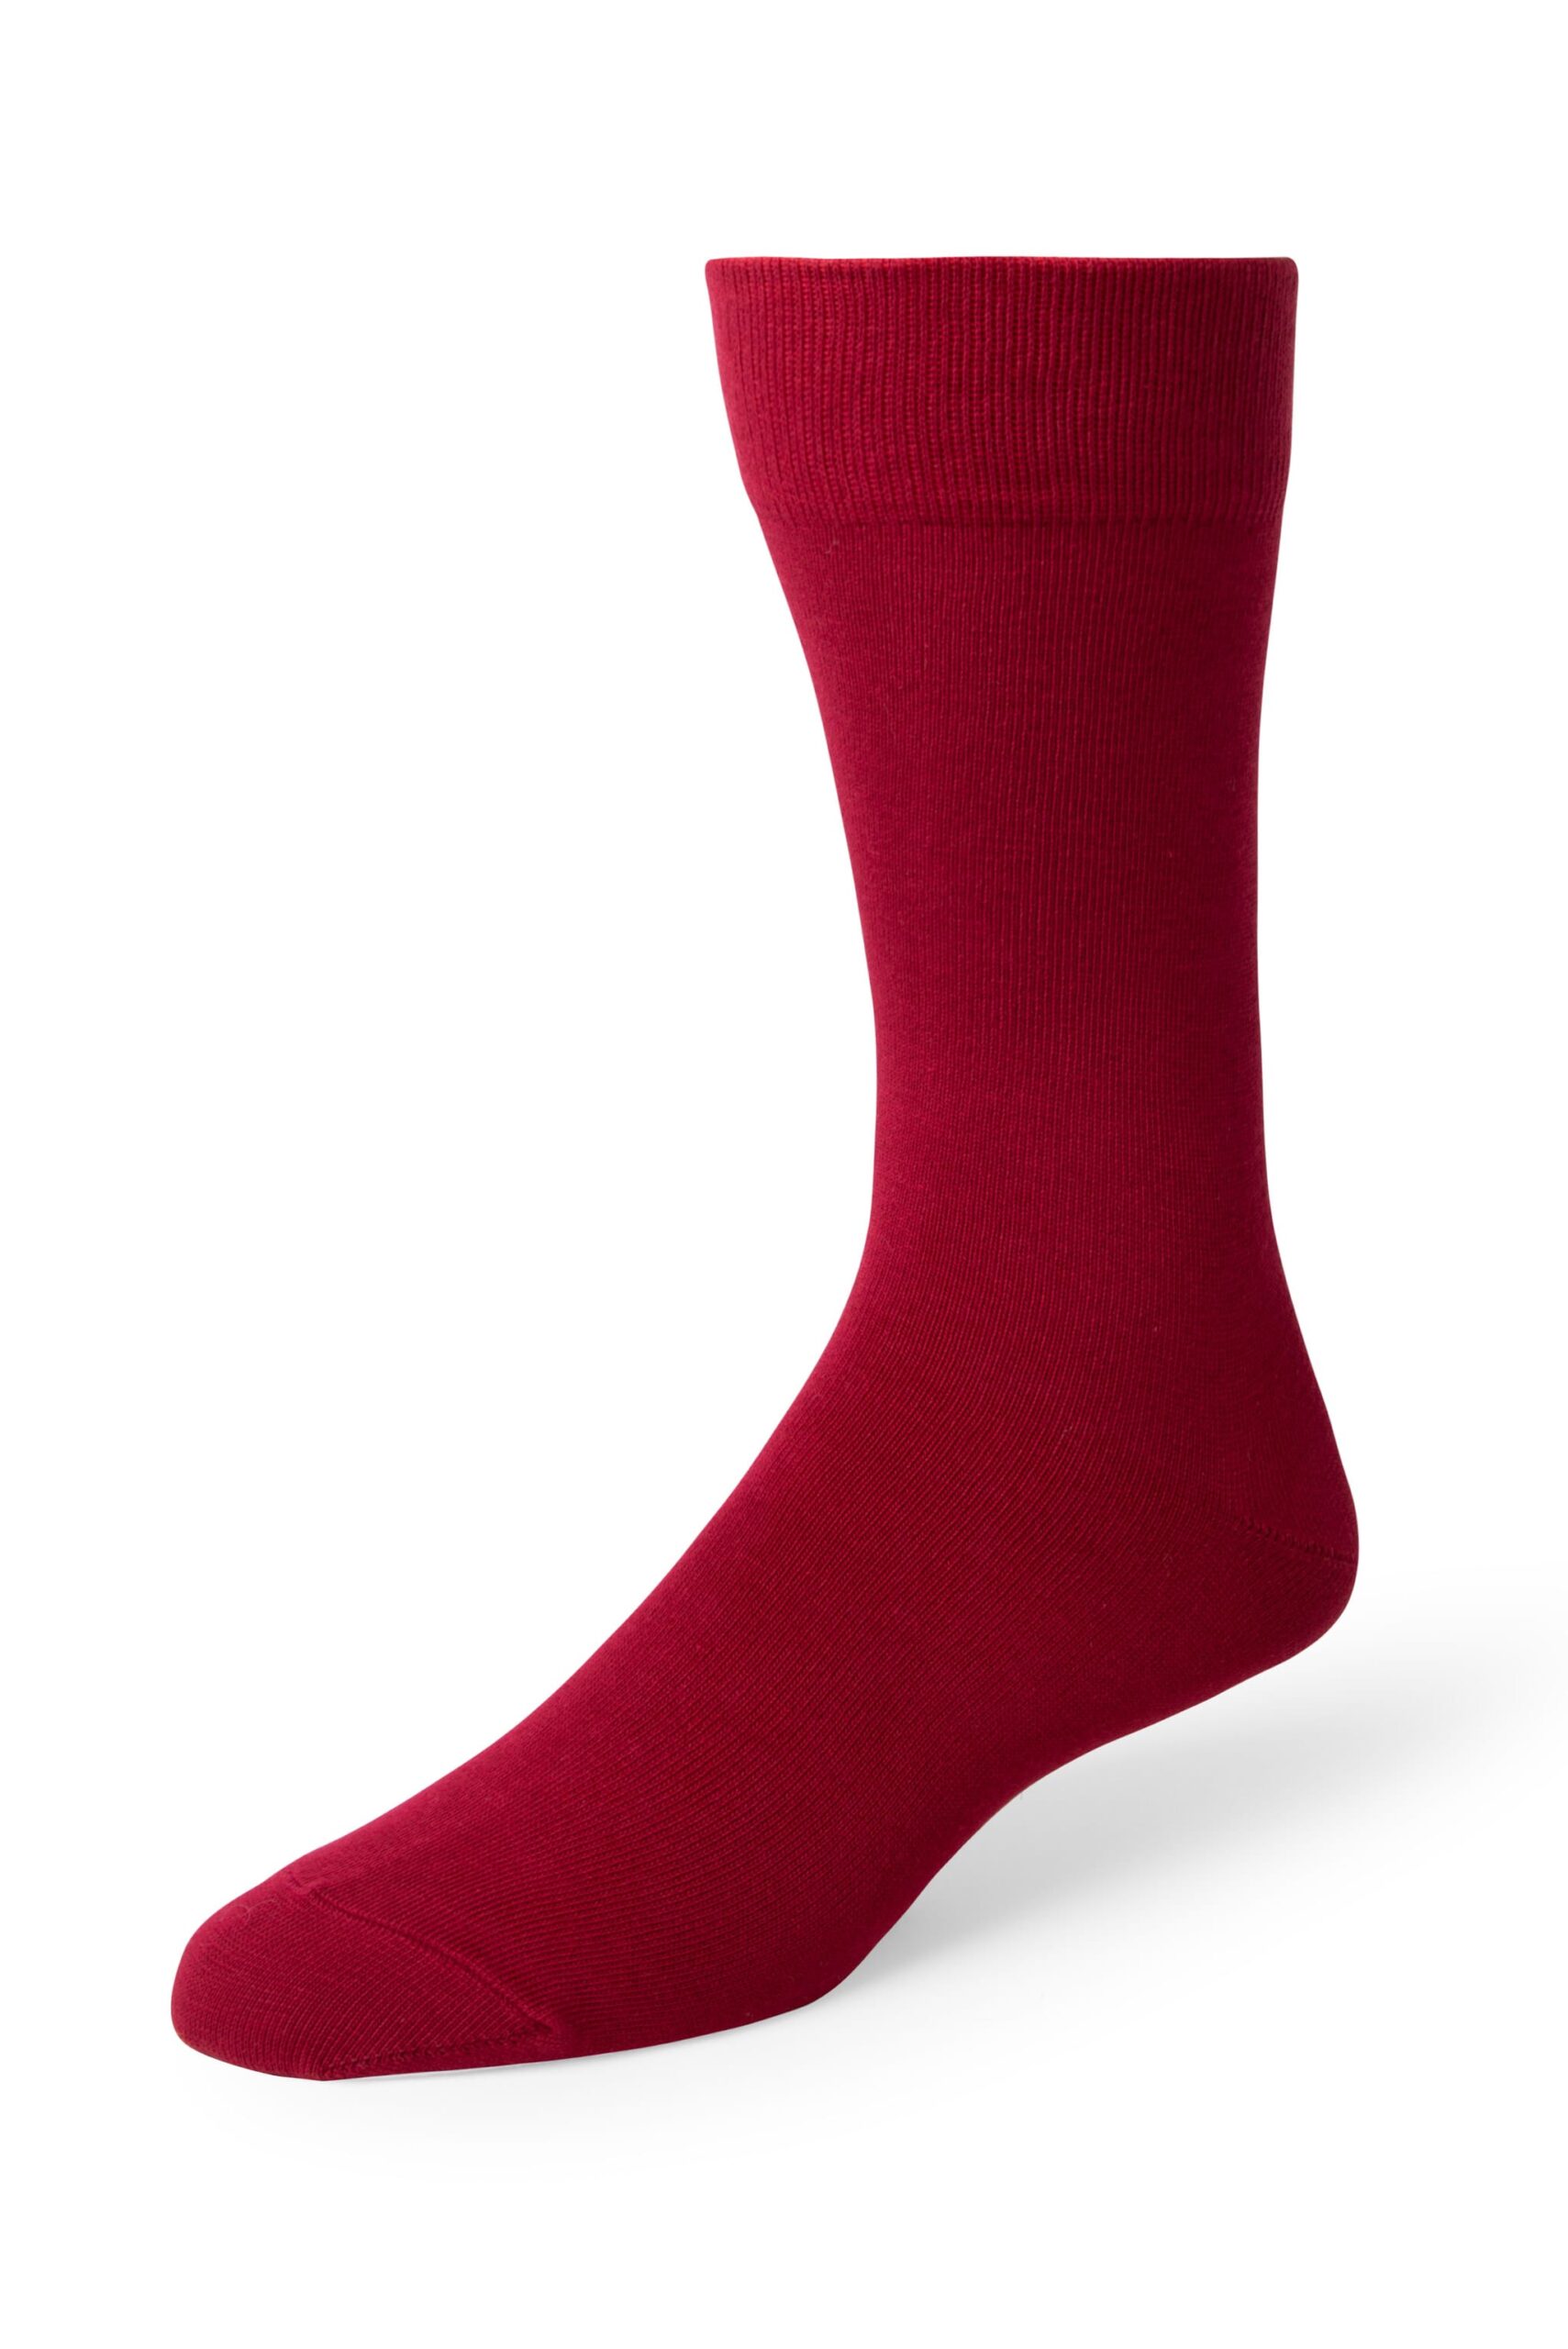 Apple Red Men's Dress Socks